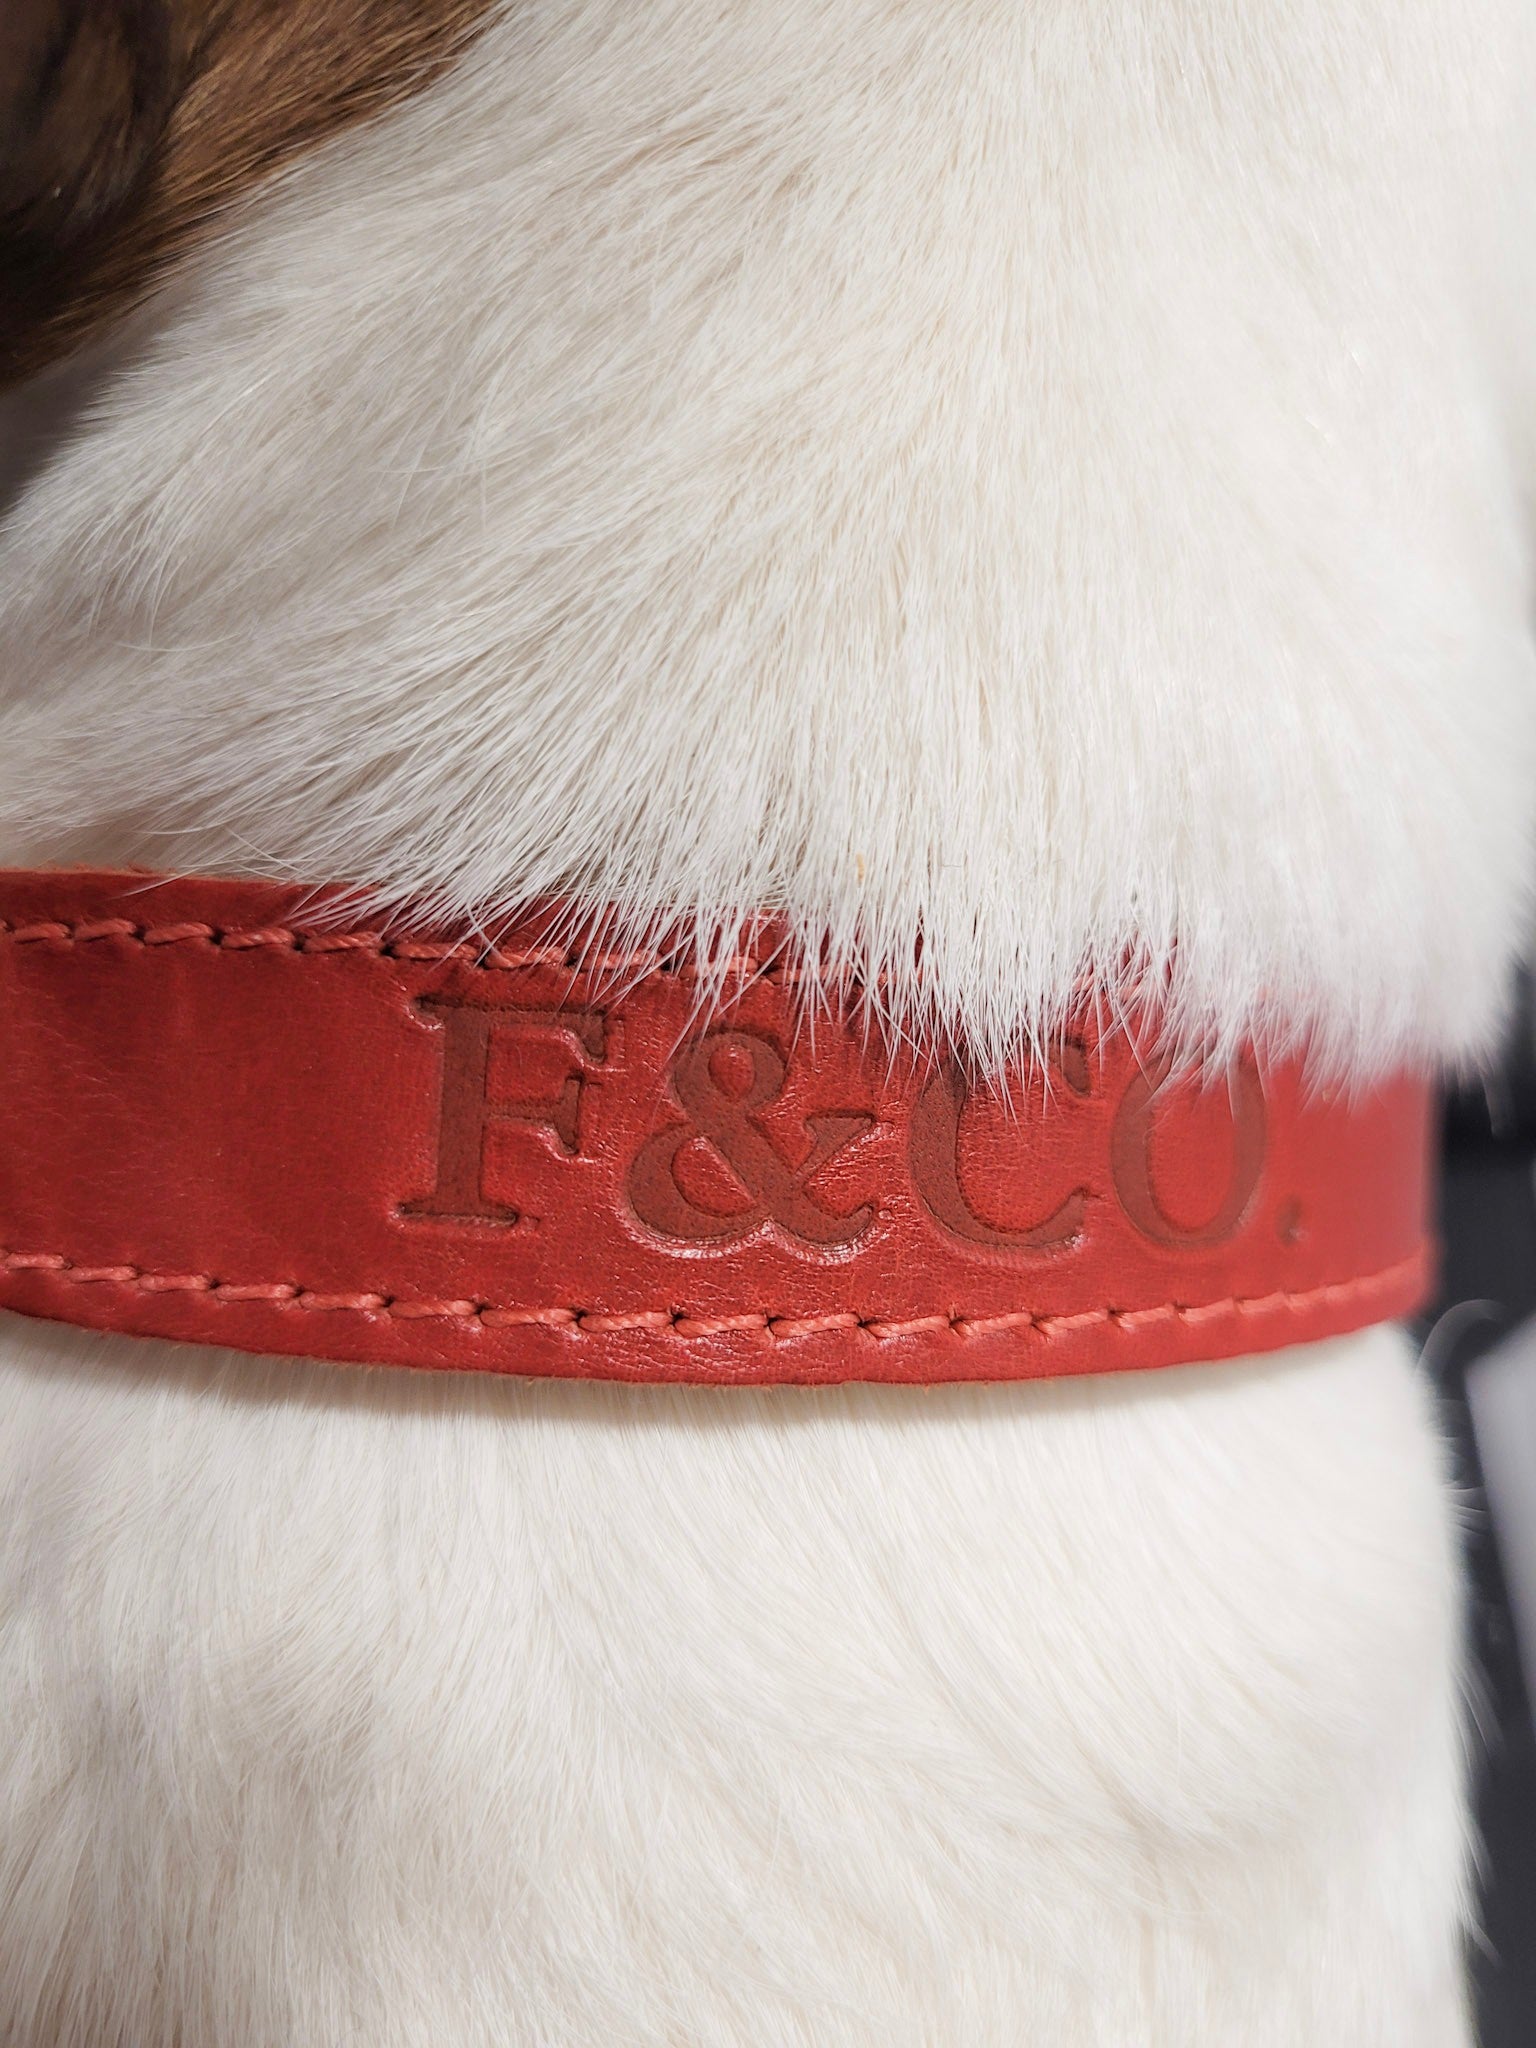 Collier en cuir rouge porté par un chien a poil blanc. Couture rouge et logo estampé.